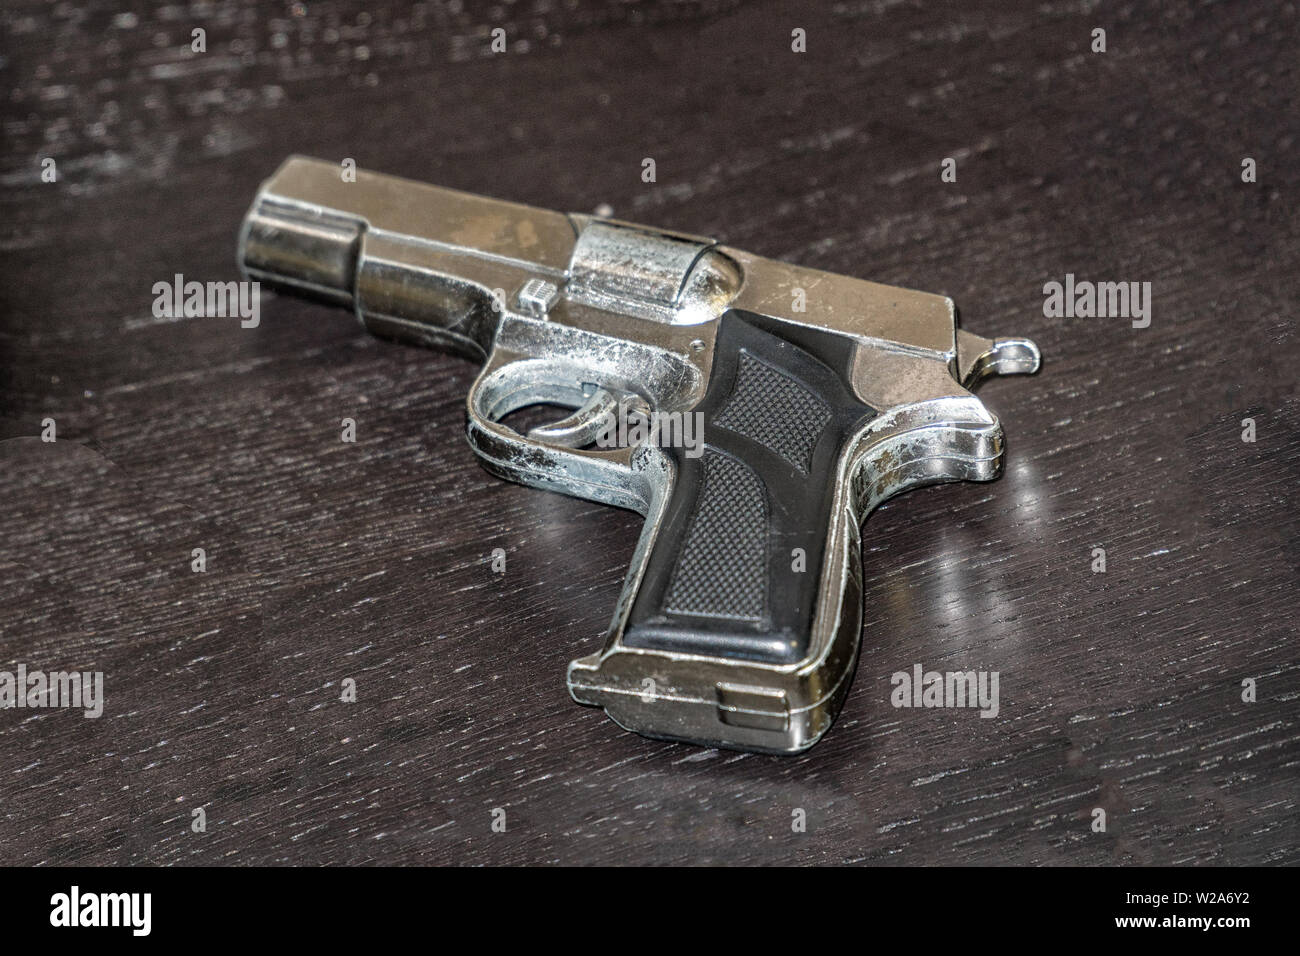 Fake gun on the table Stock Photo